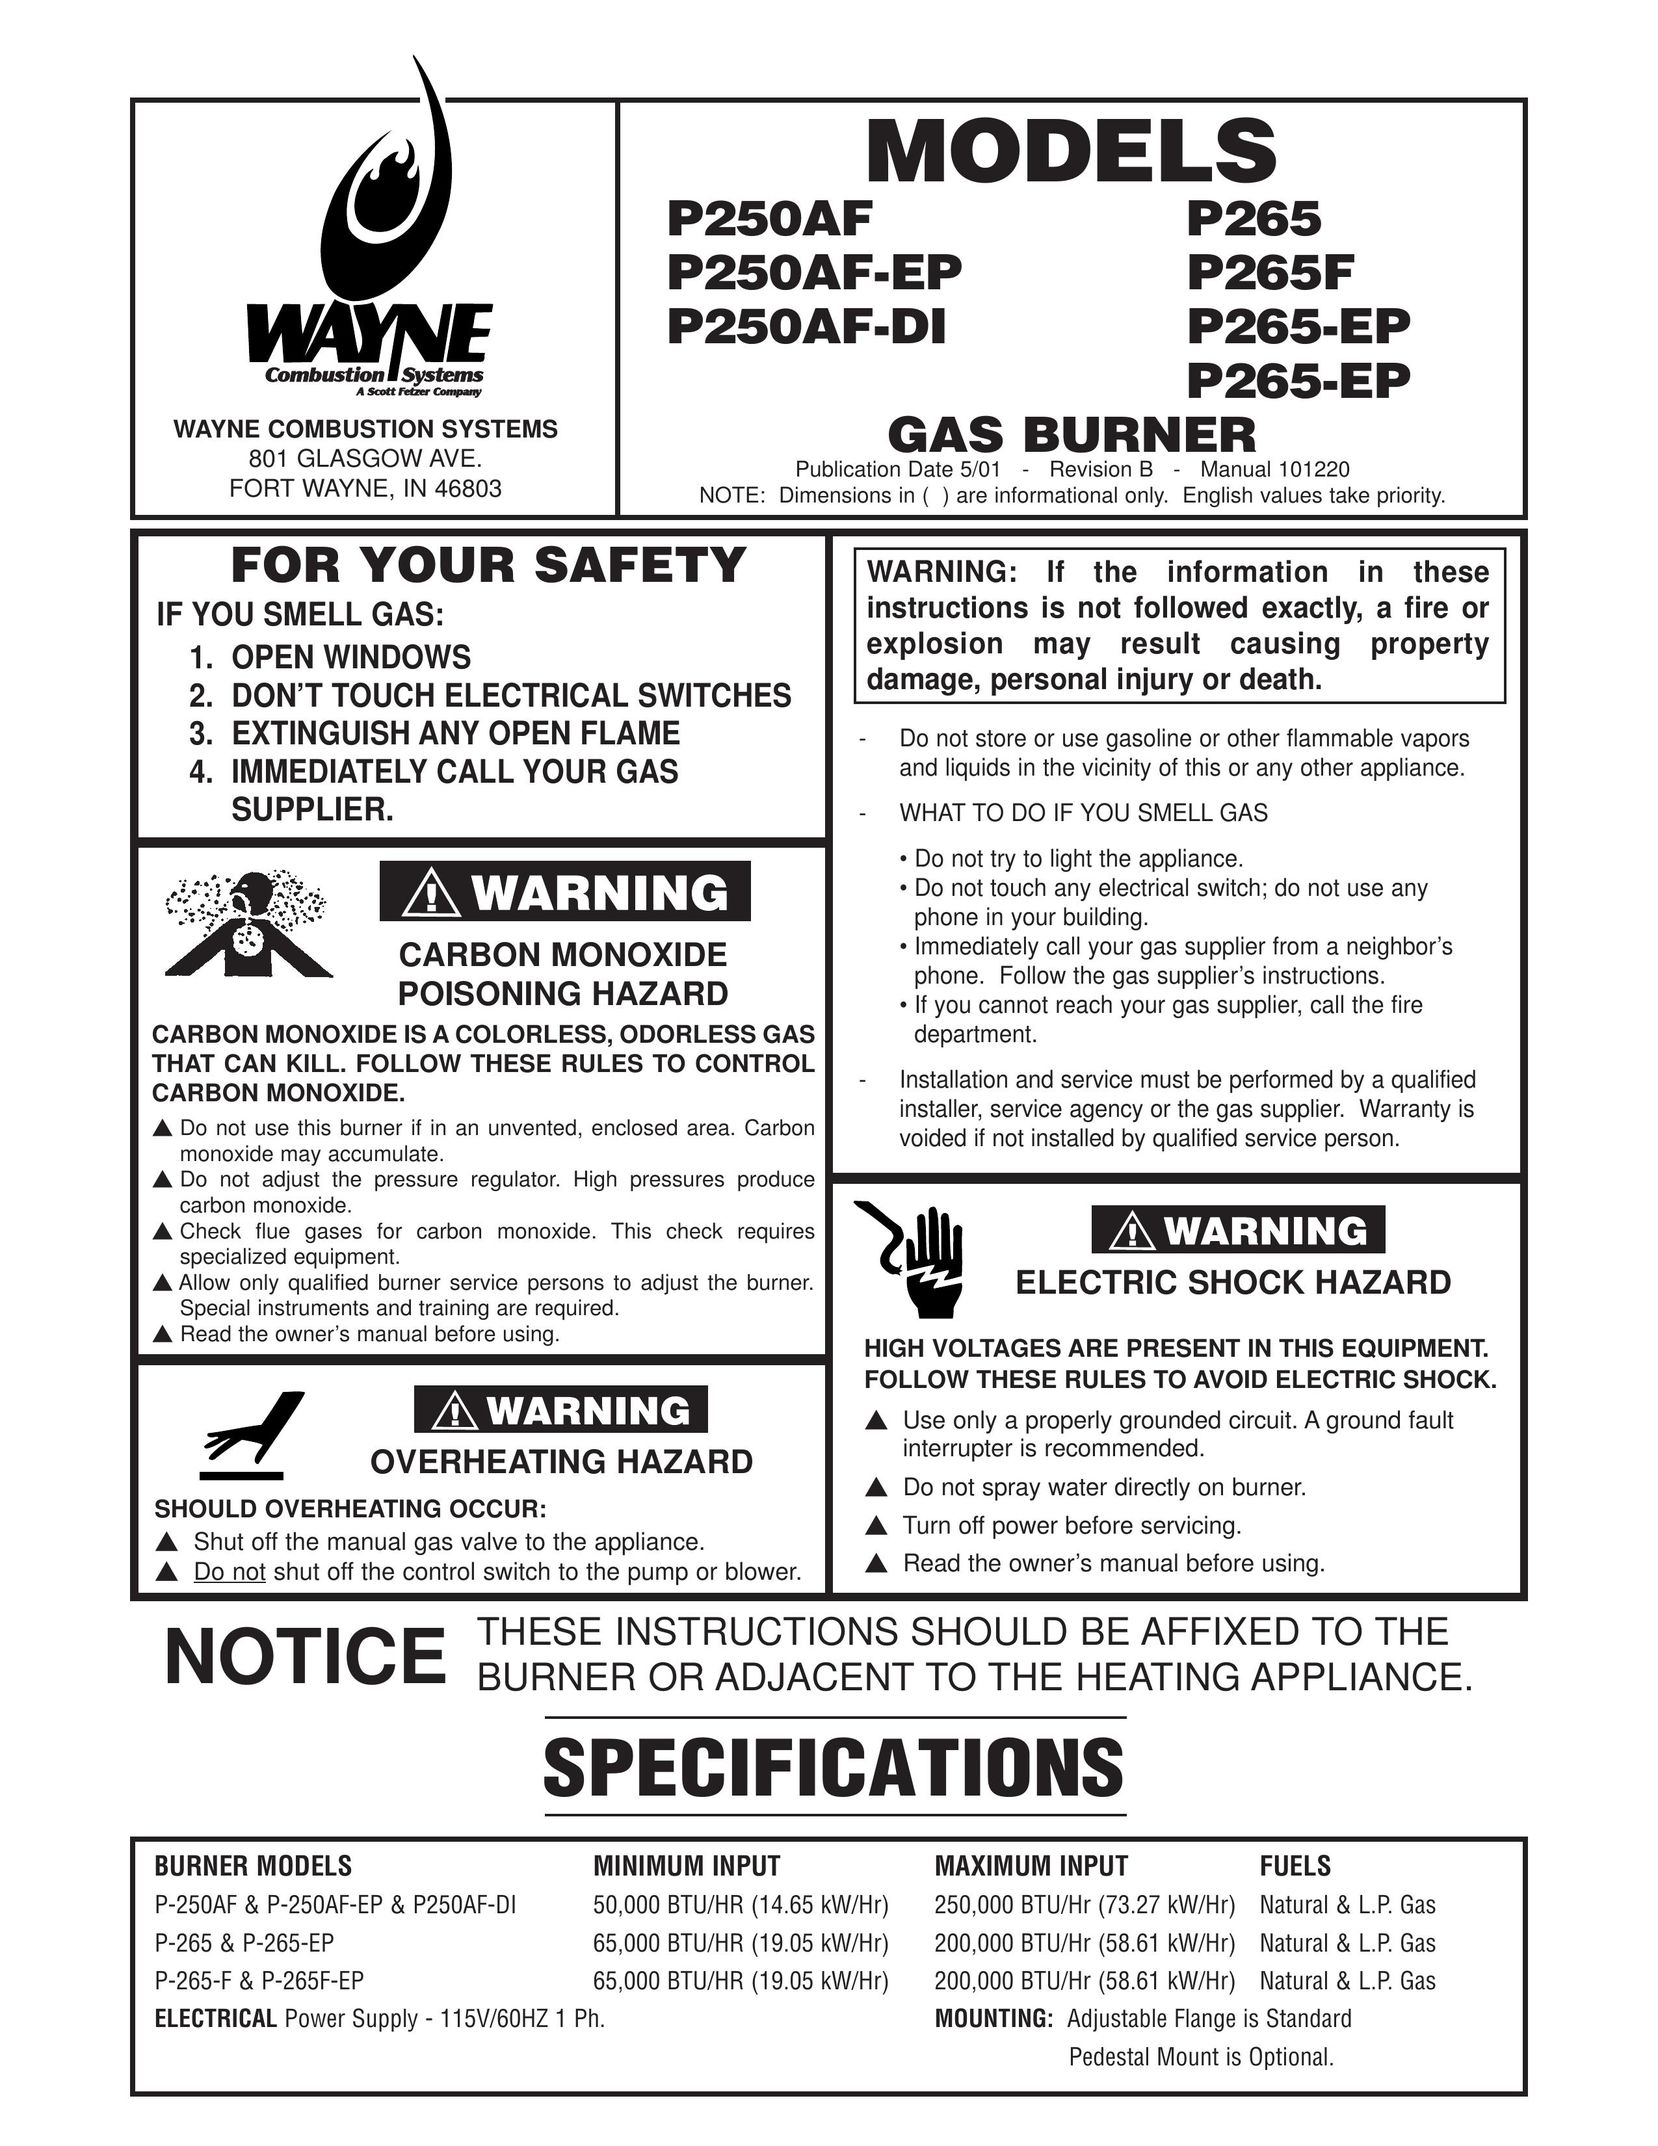 Wayne P250AF-EP Burner User Manual